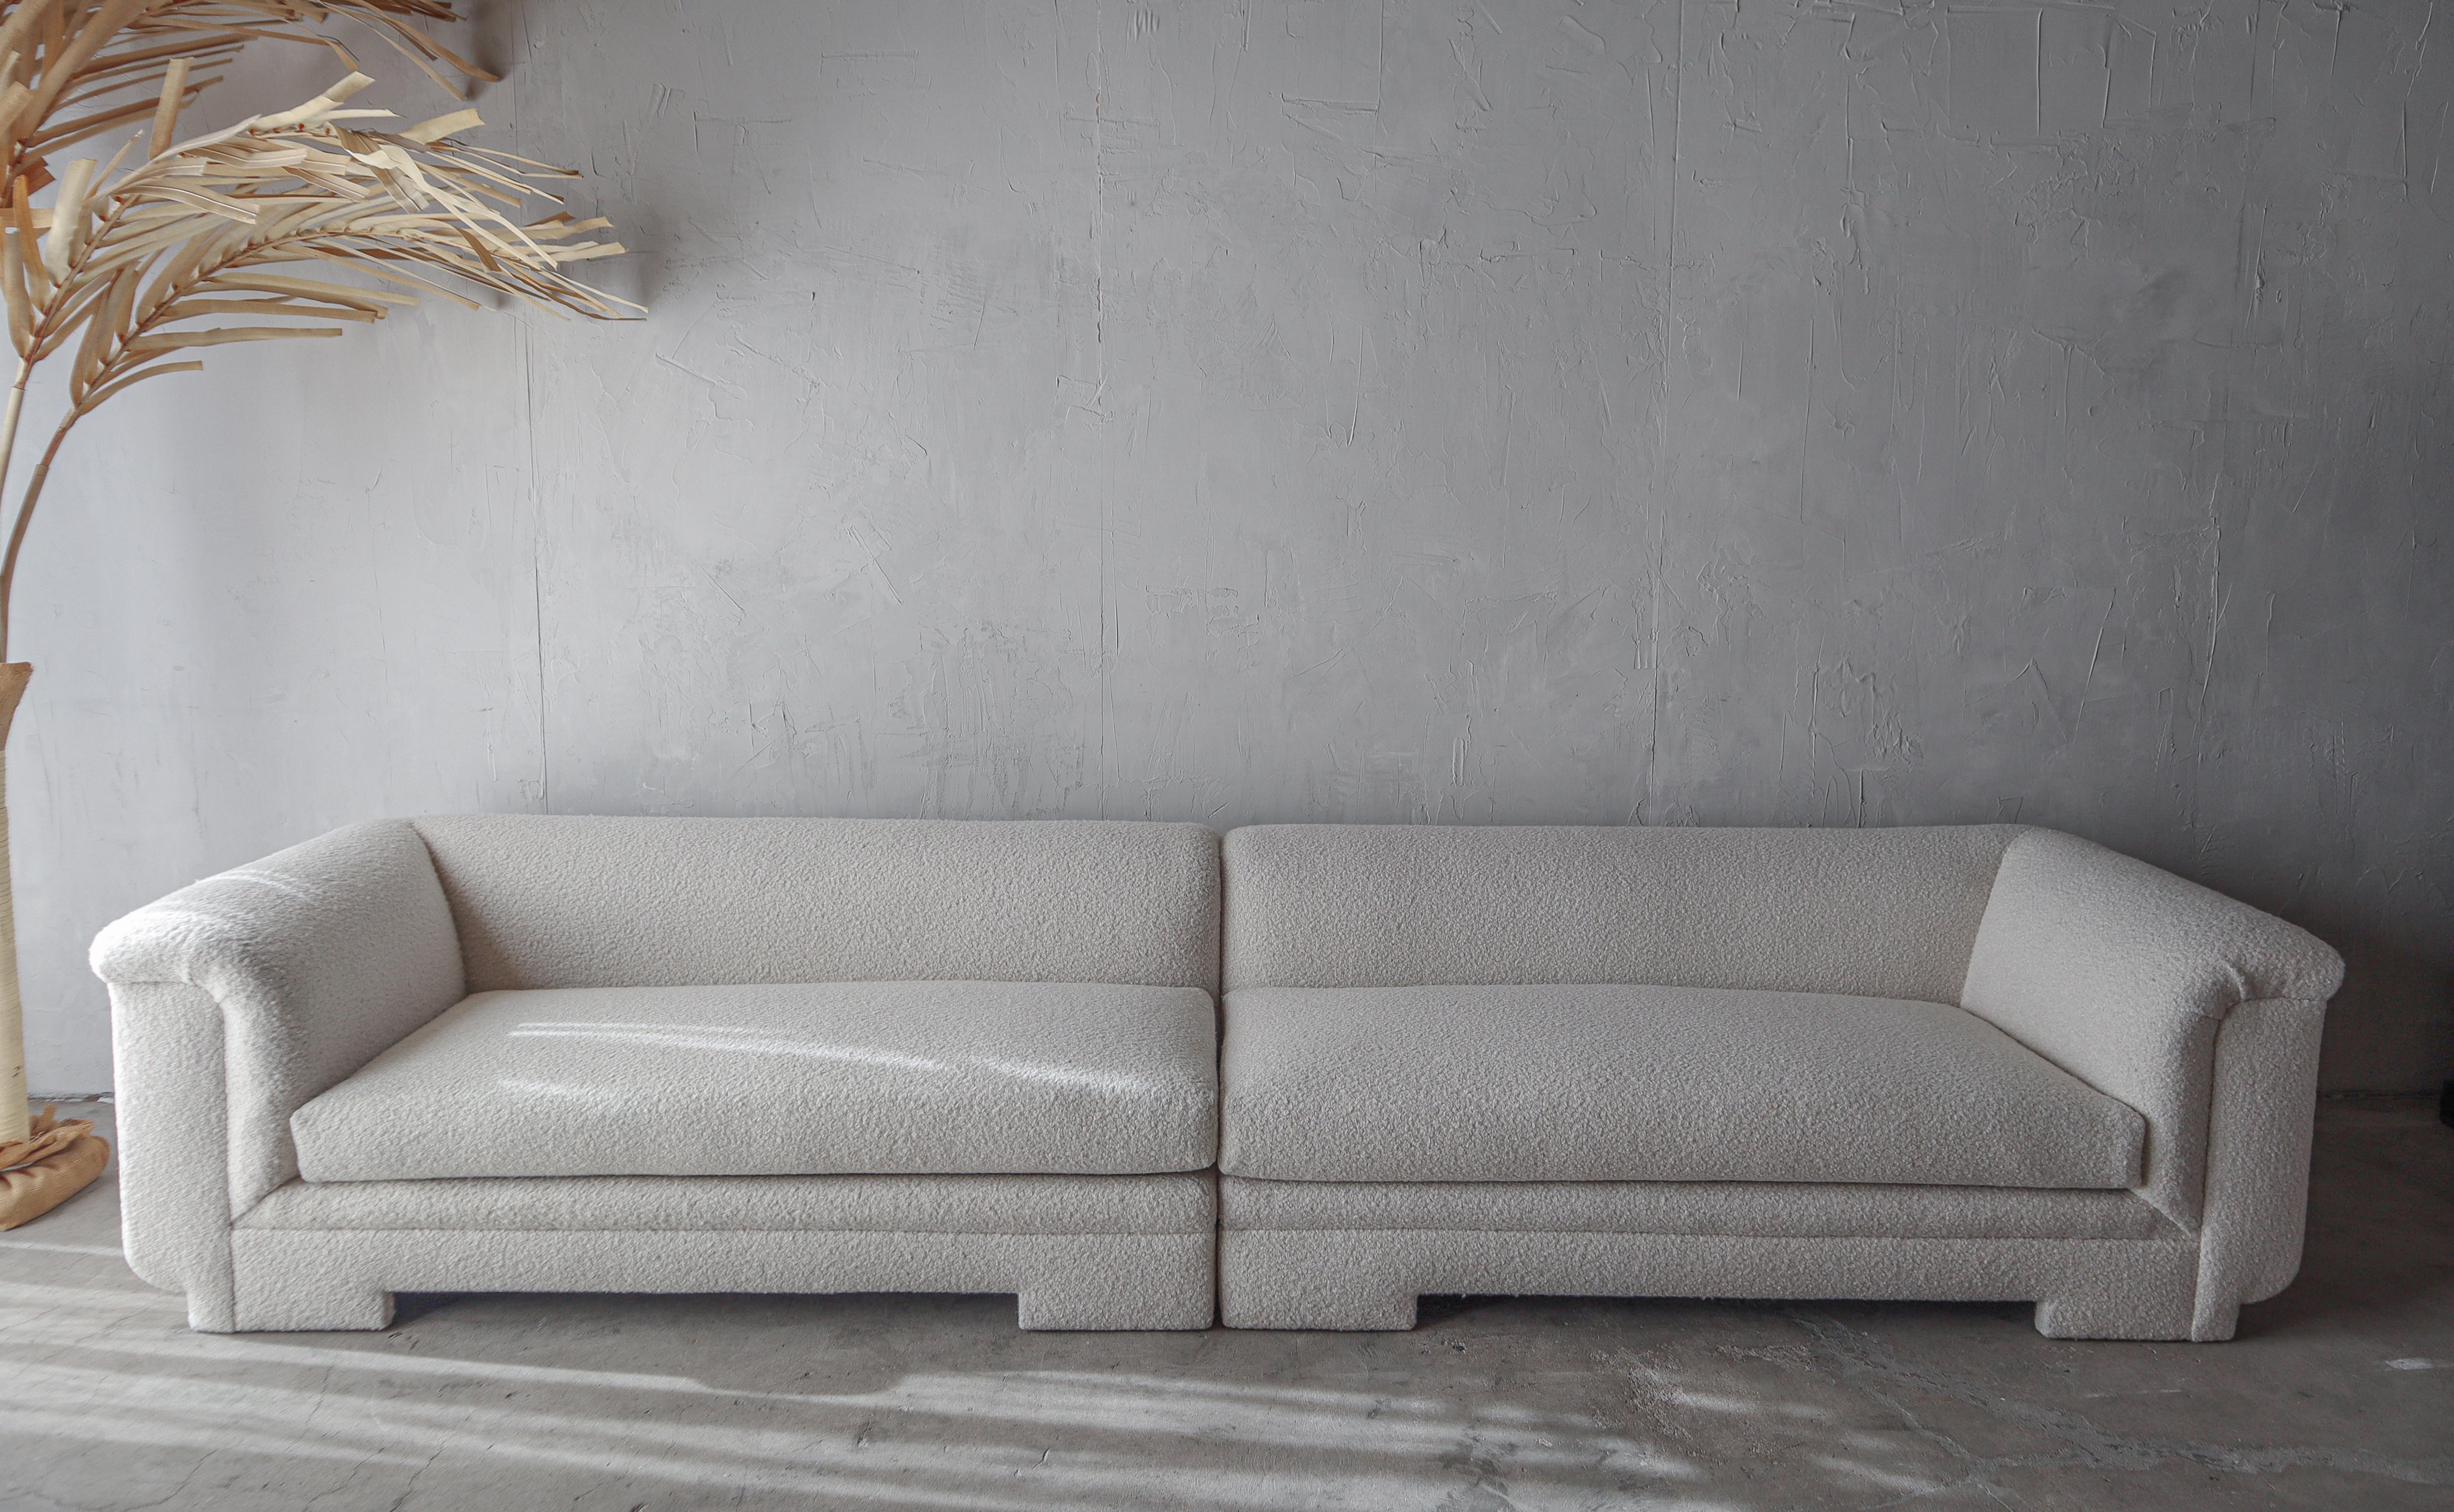 Einzigartig anderes 2-teiliges Postmodernes Sofa. Ein großes Stück, das 12 Fuß misst, zwei 6-Fuß-Stücke. Es ist perfekt, um in einem Raum zu schweben. Das Sofa hat wunderschöne, einfache Linien. Das Sofa besteht aus 2 Teilen, die separat als